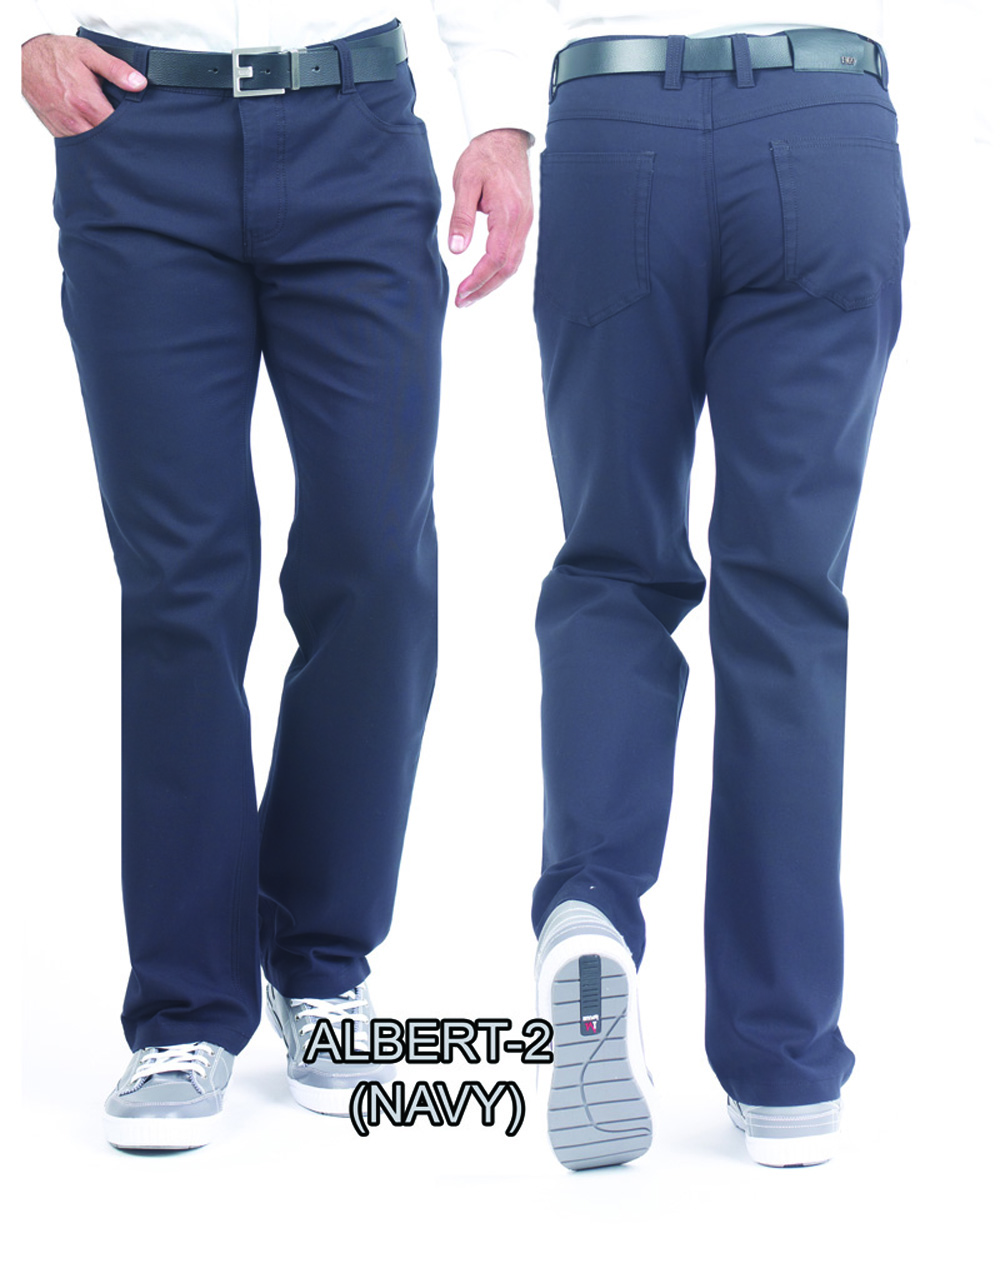 Enzo Navy Denim Jeans - Albert-2 - Moda Italy Fashion